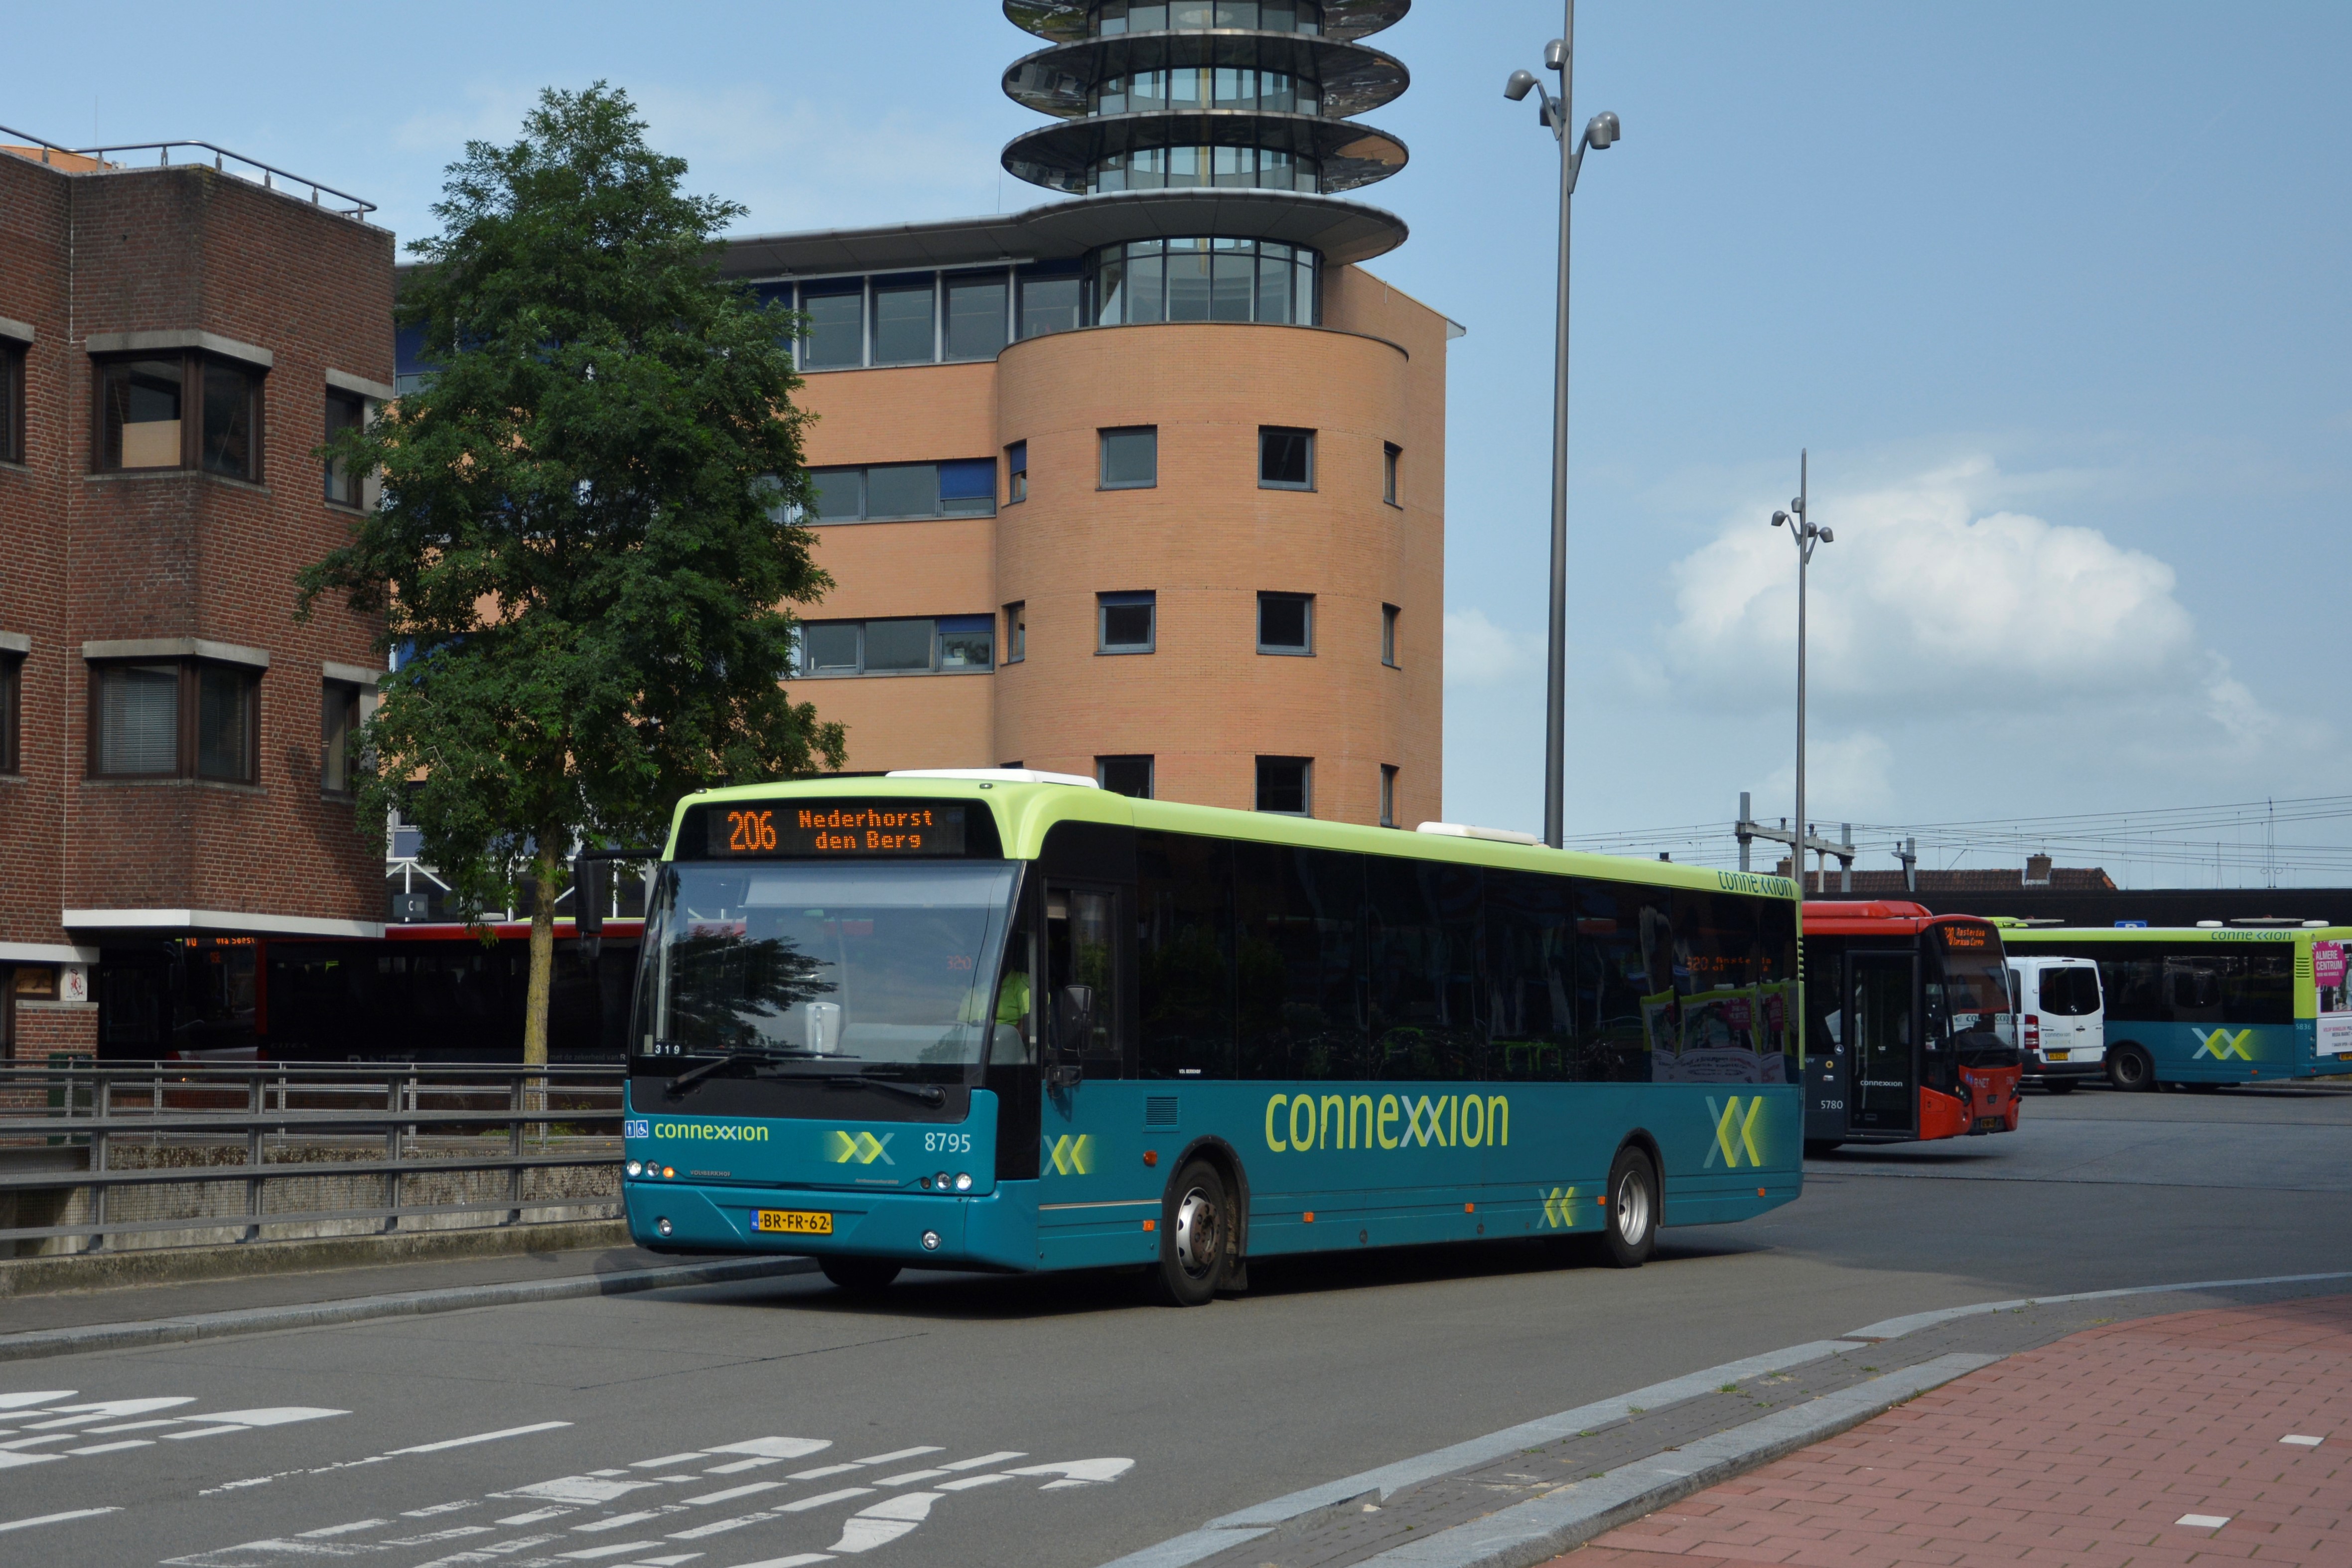 gips Gehoorzaam gemakkelijk Connexxion 8795 – Openbaar Vervoer Collectie Nederland